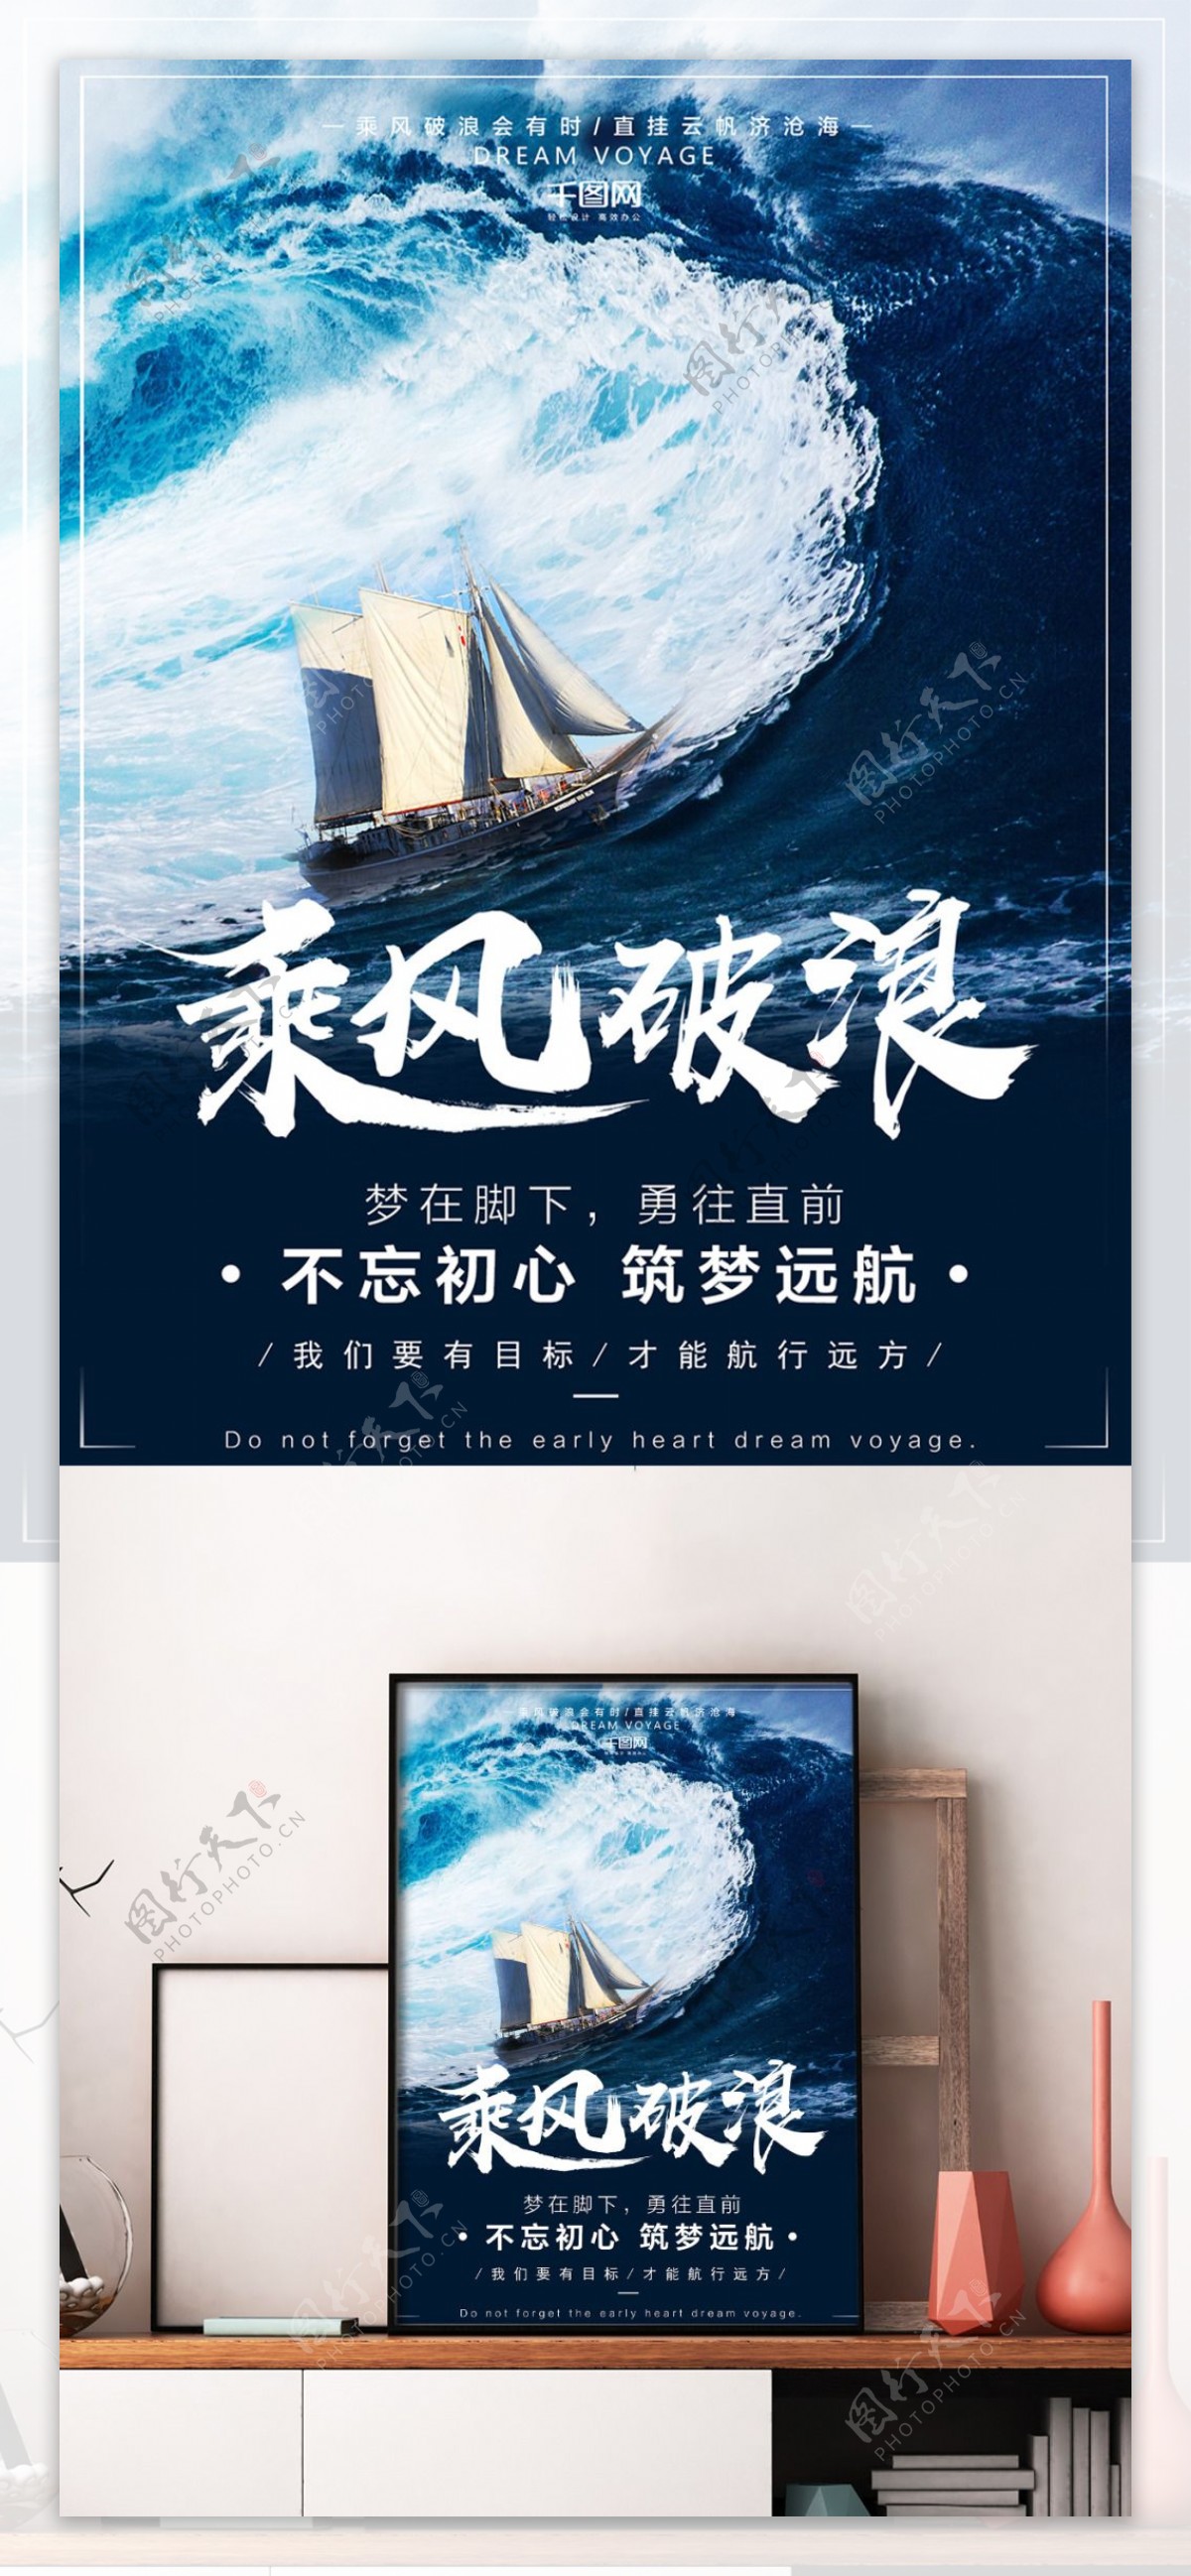 海洋企业文化乘风破浪创意简约宣传海报设计